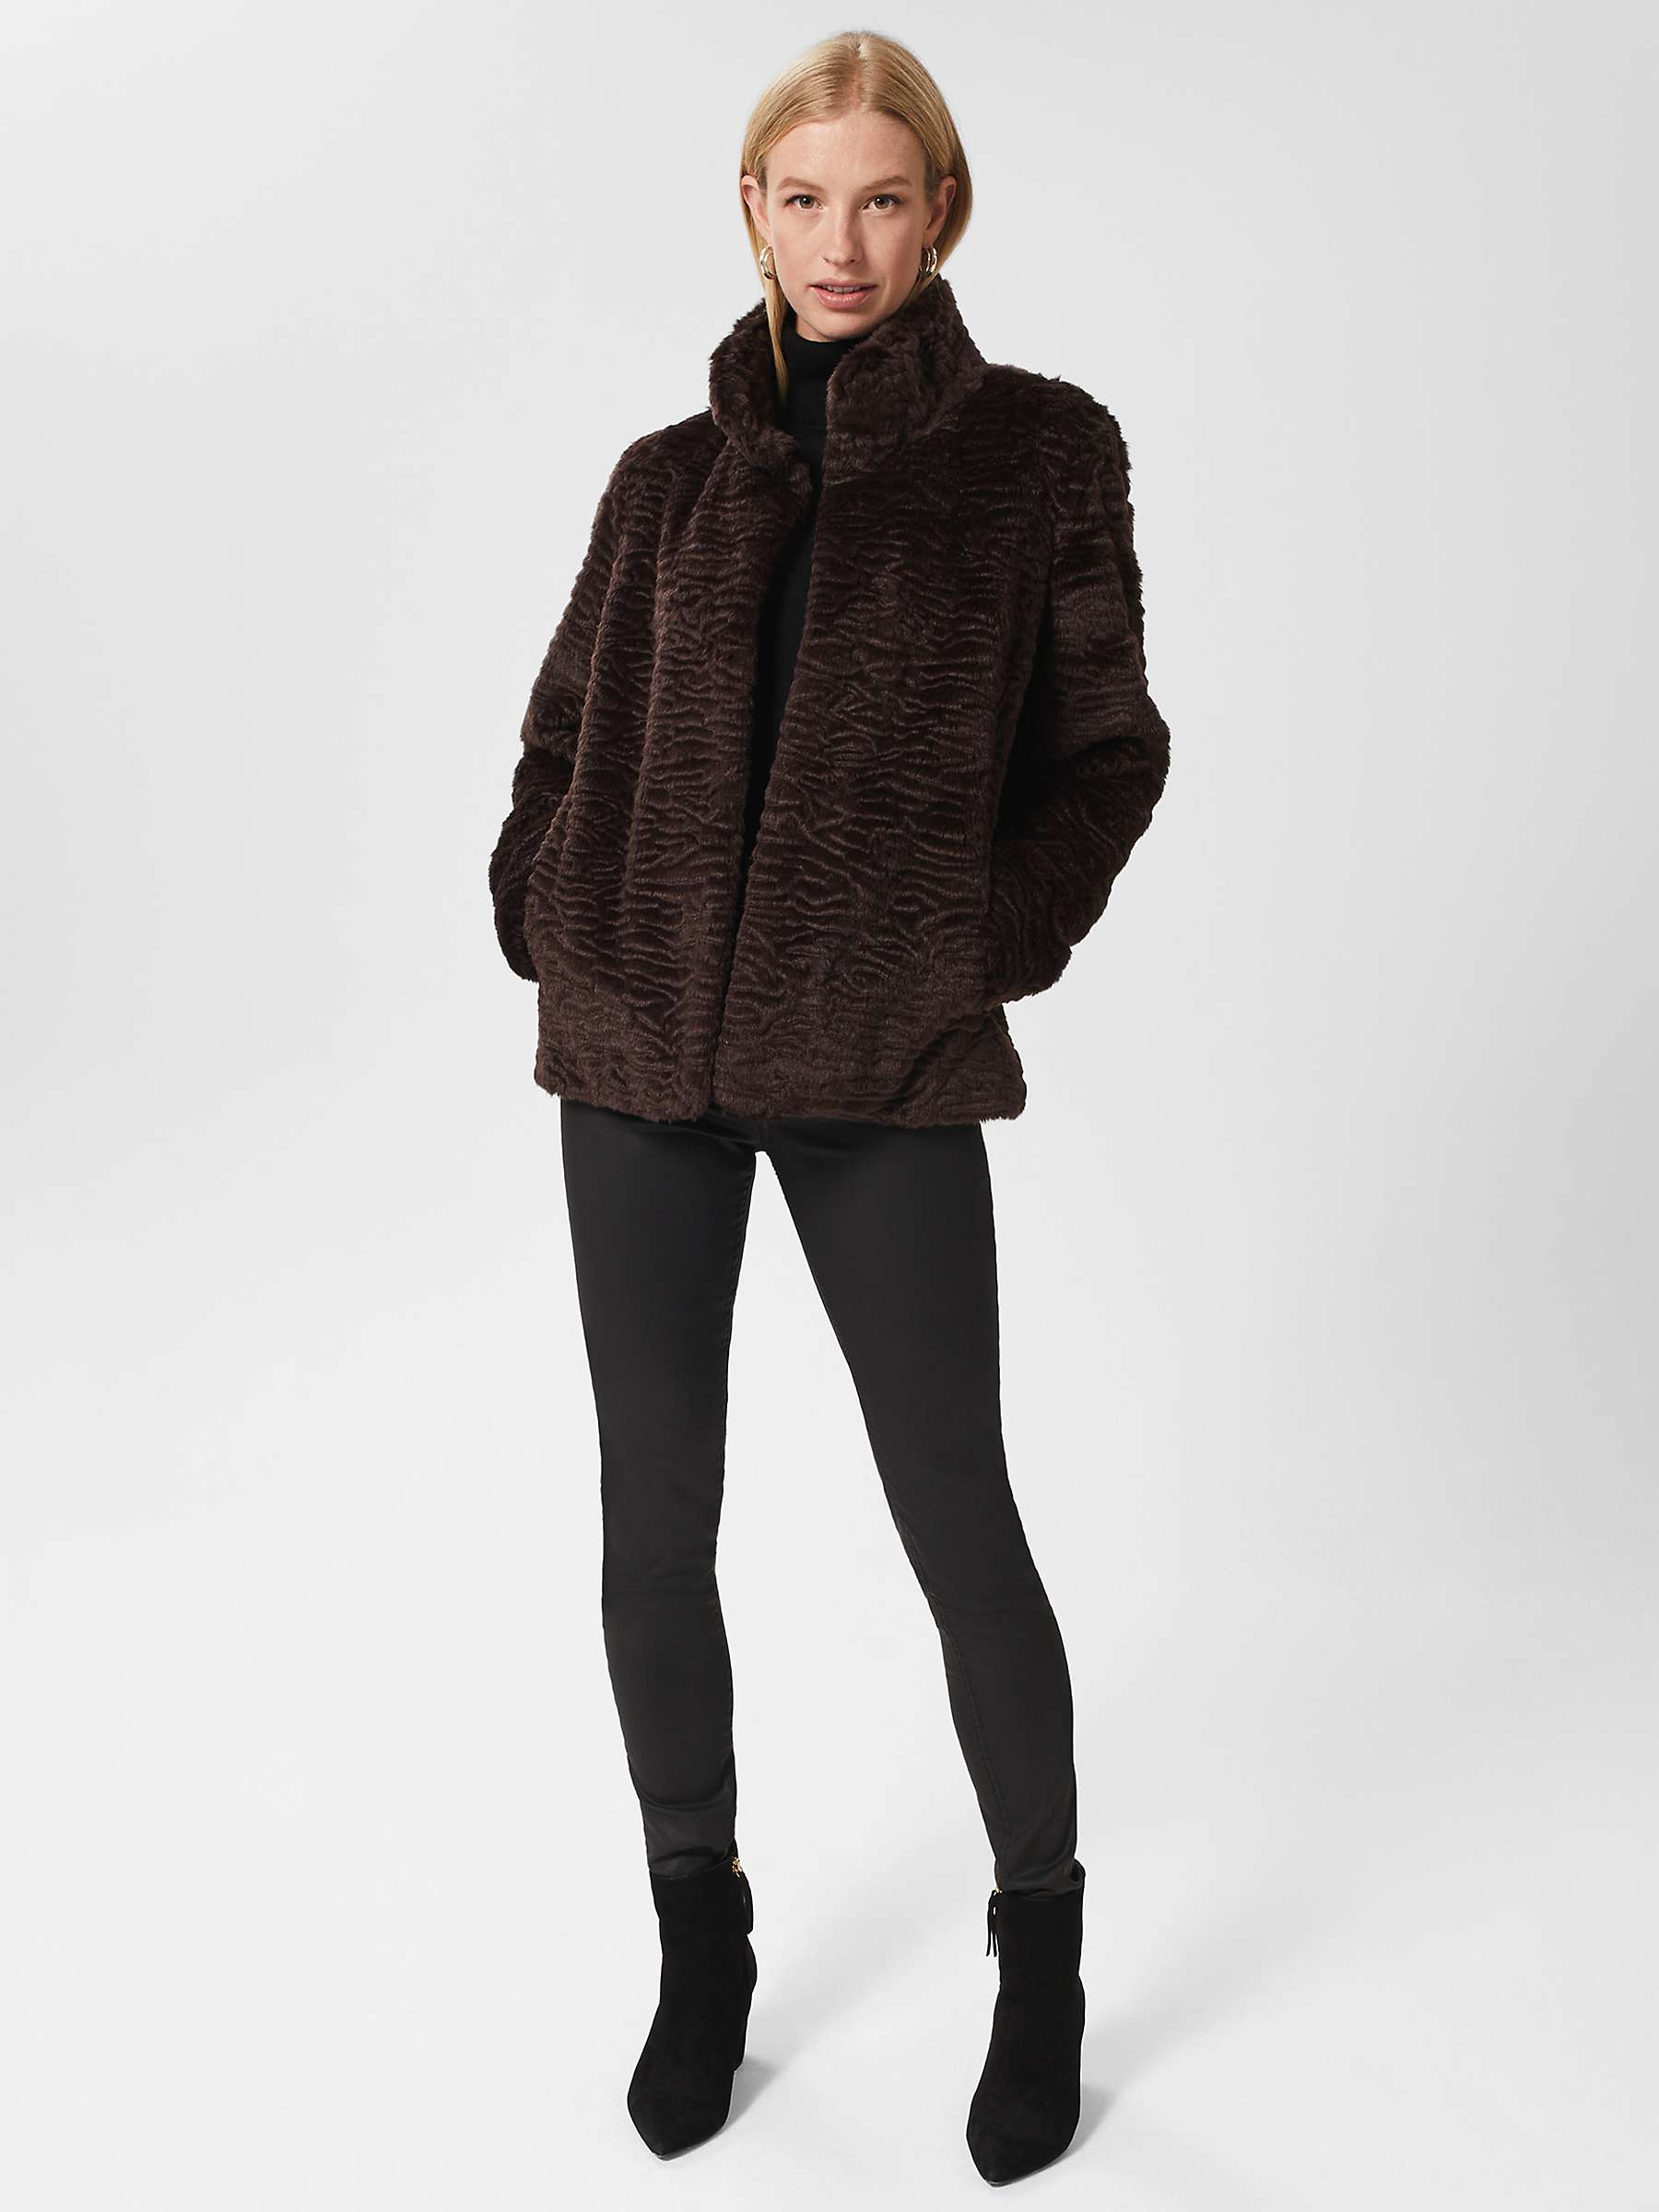 Hobbs Lia Faux Fur Coat, Aubergine at John Lewis & Partners